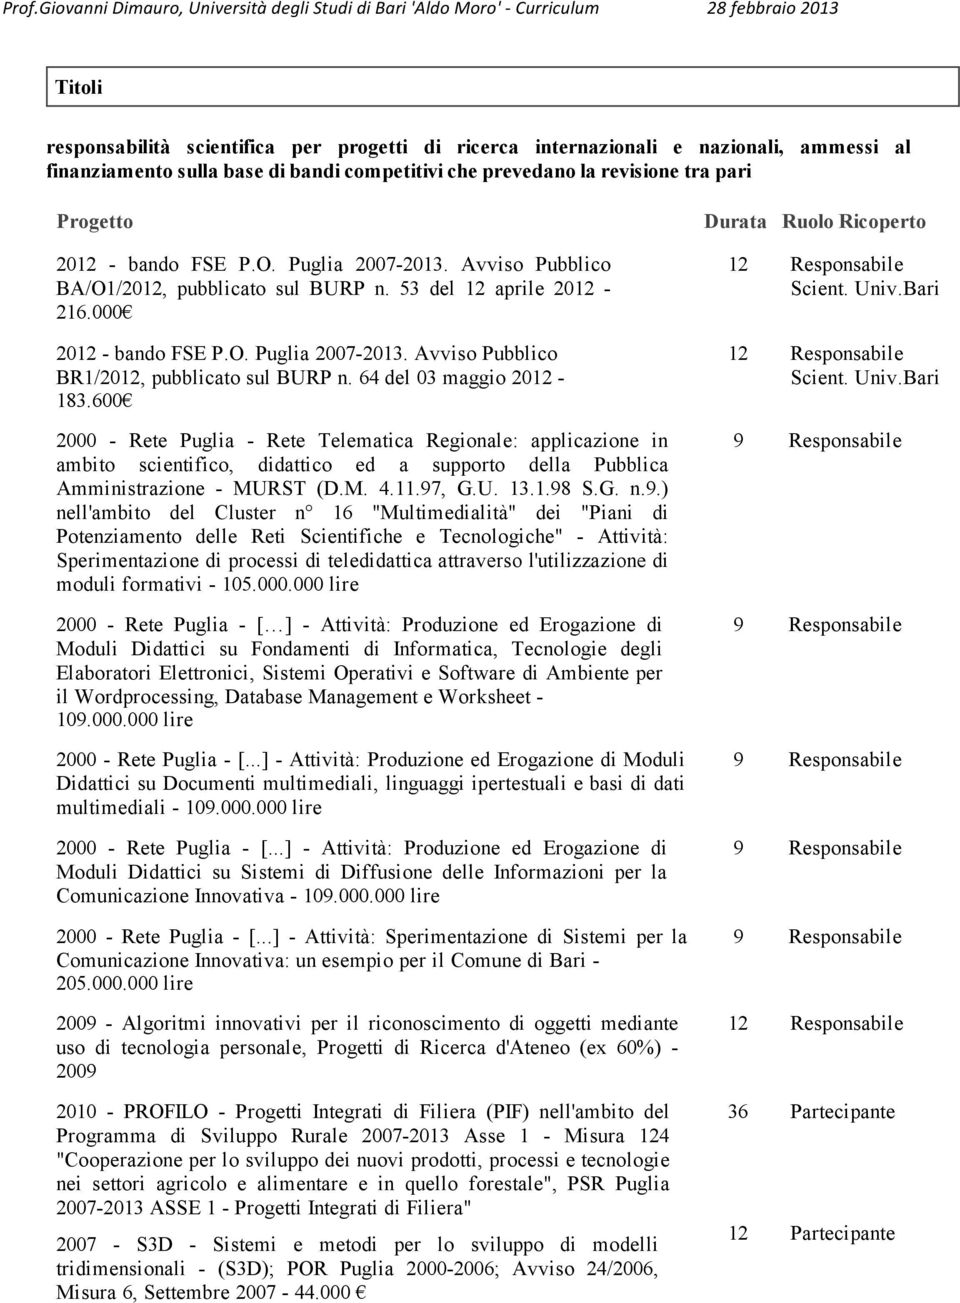 64 del 03 maggio 2012-183.600 2000 - Rete Puglia - Rete Telematica Regionale: applicazione in ambito scientifico, didattico ed a supporto della Pubblica Amministrazione - MURST (D.M. 4.11.97, G.U. 13.